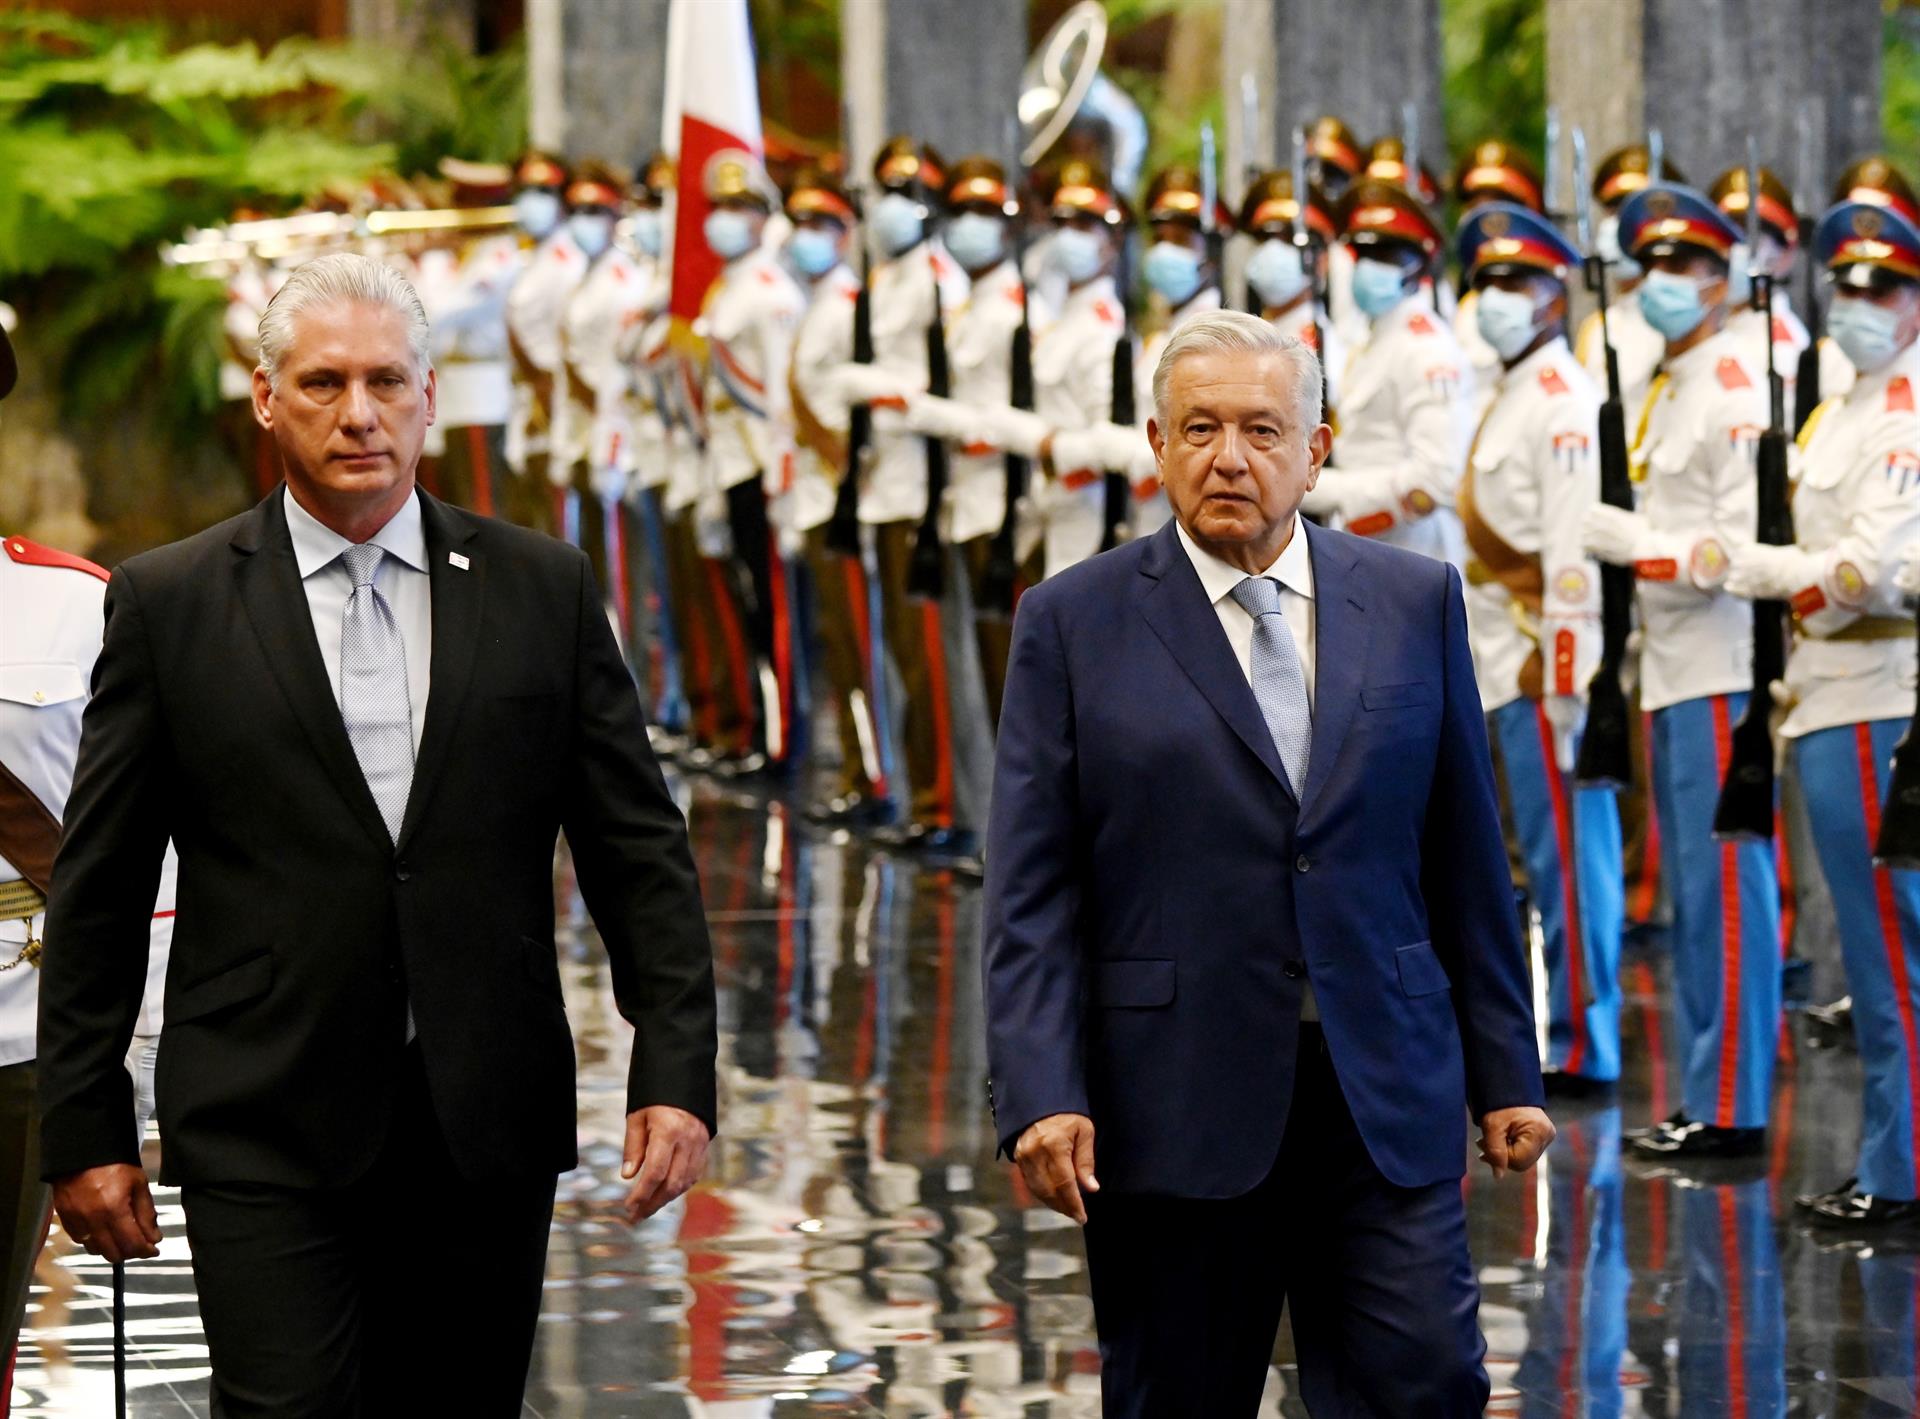 El presidente cubano Miguel Diaz-Canel (i), recibe a su homólogo de México, Andrés Manuel López Obrador (d), en el Palacio de la Revolución, hoy en La Habana (Cuba). EFE/Yamil Lage/POOL
